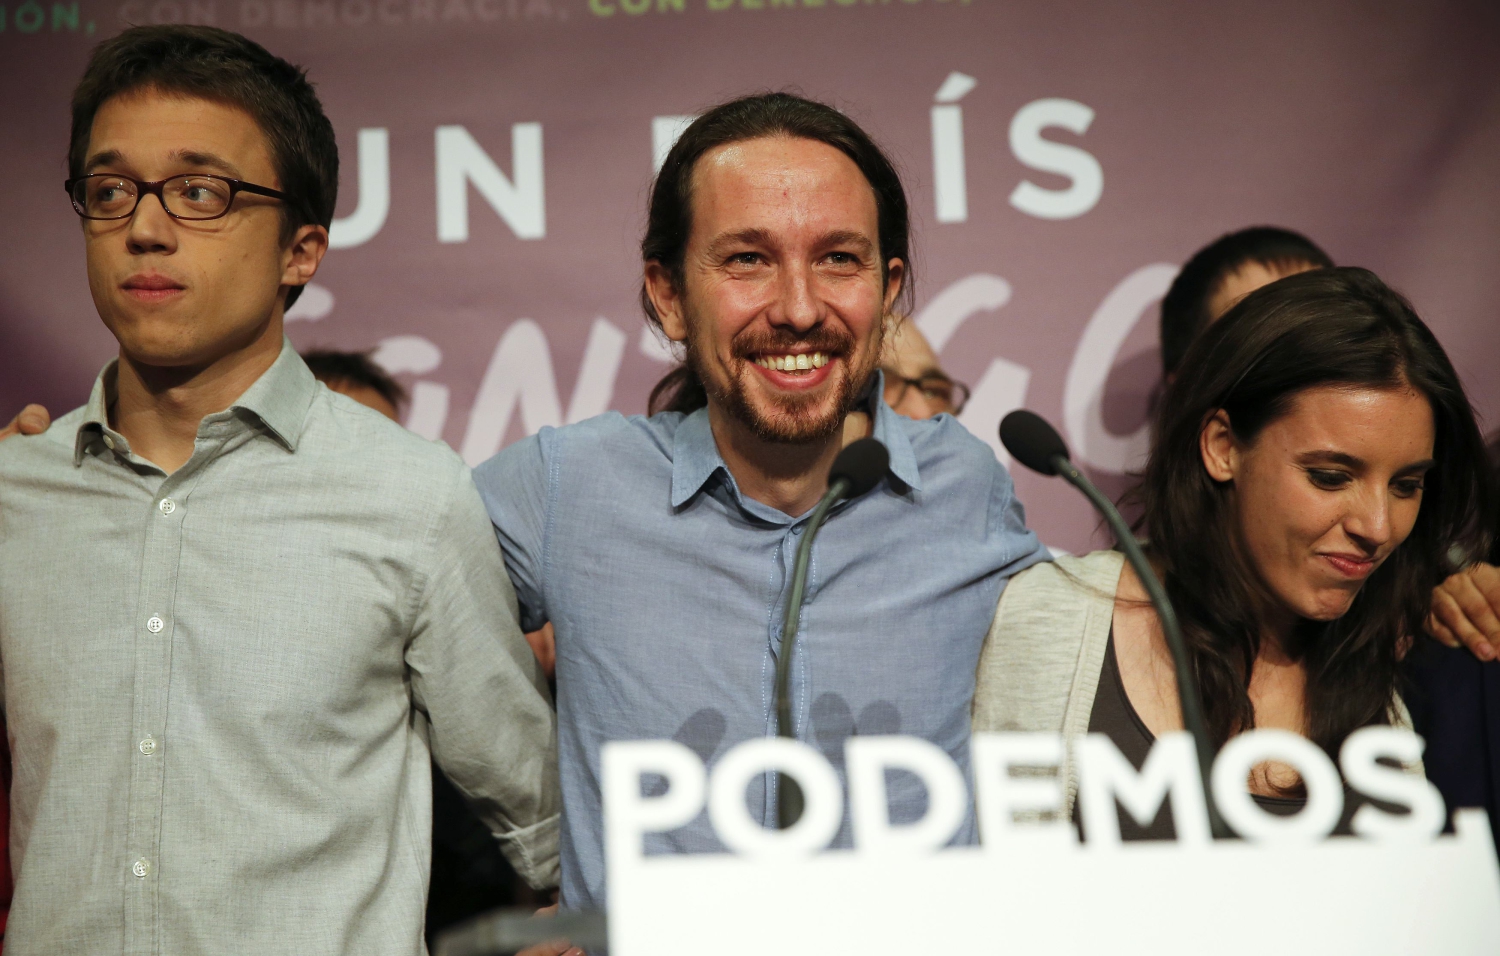 Éxito de Podemos, decepción de C's, IU no obtiene grupo propio y UPyD desaparece